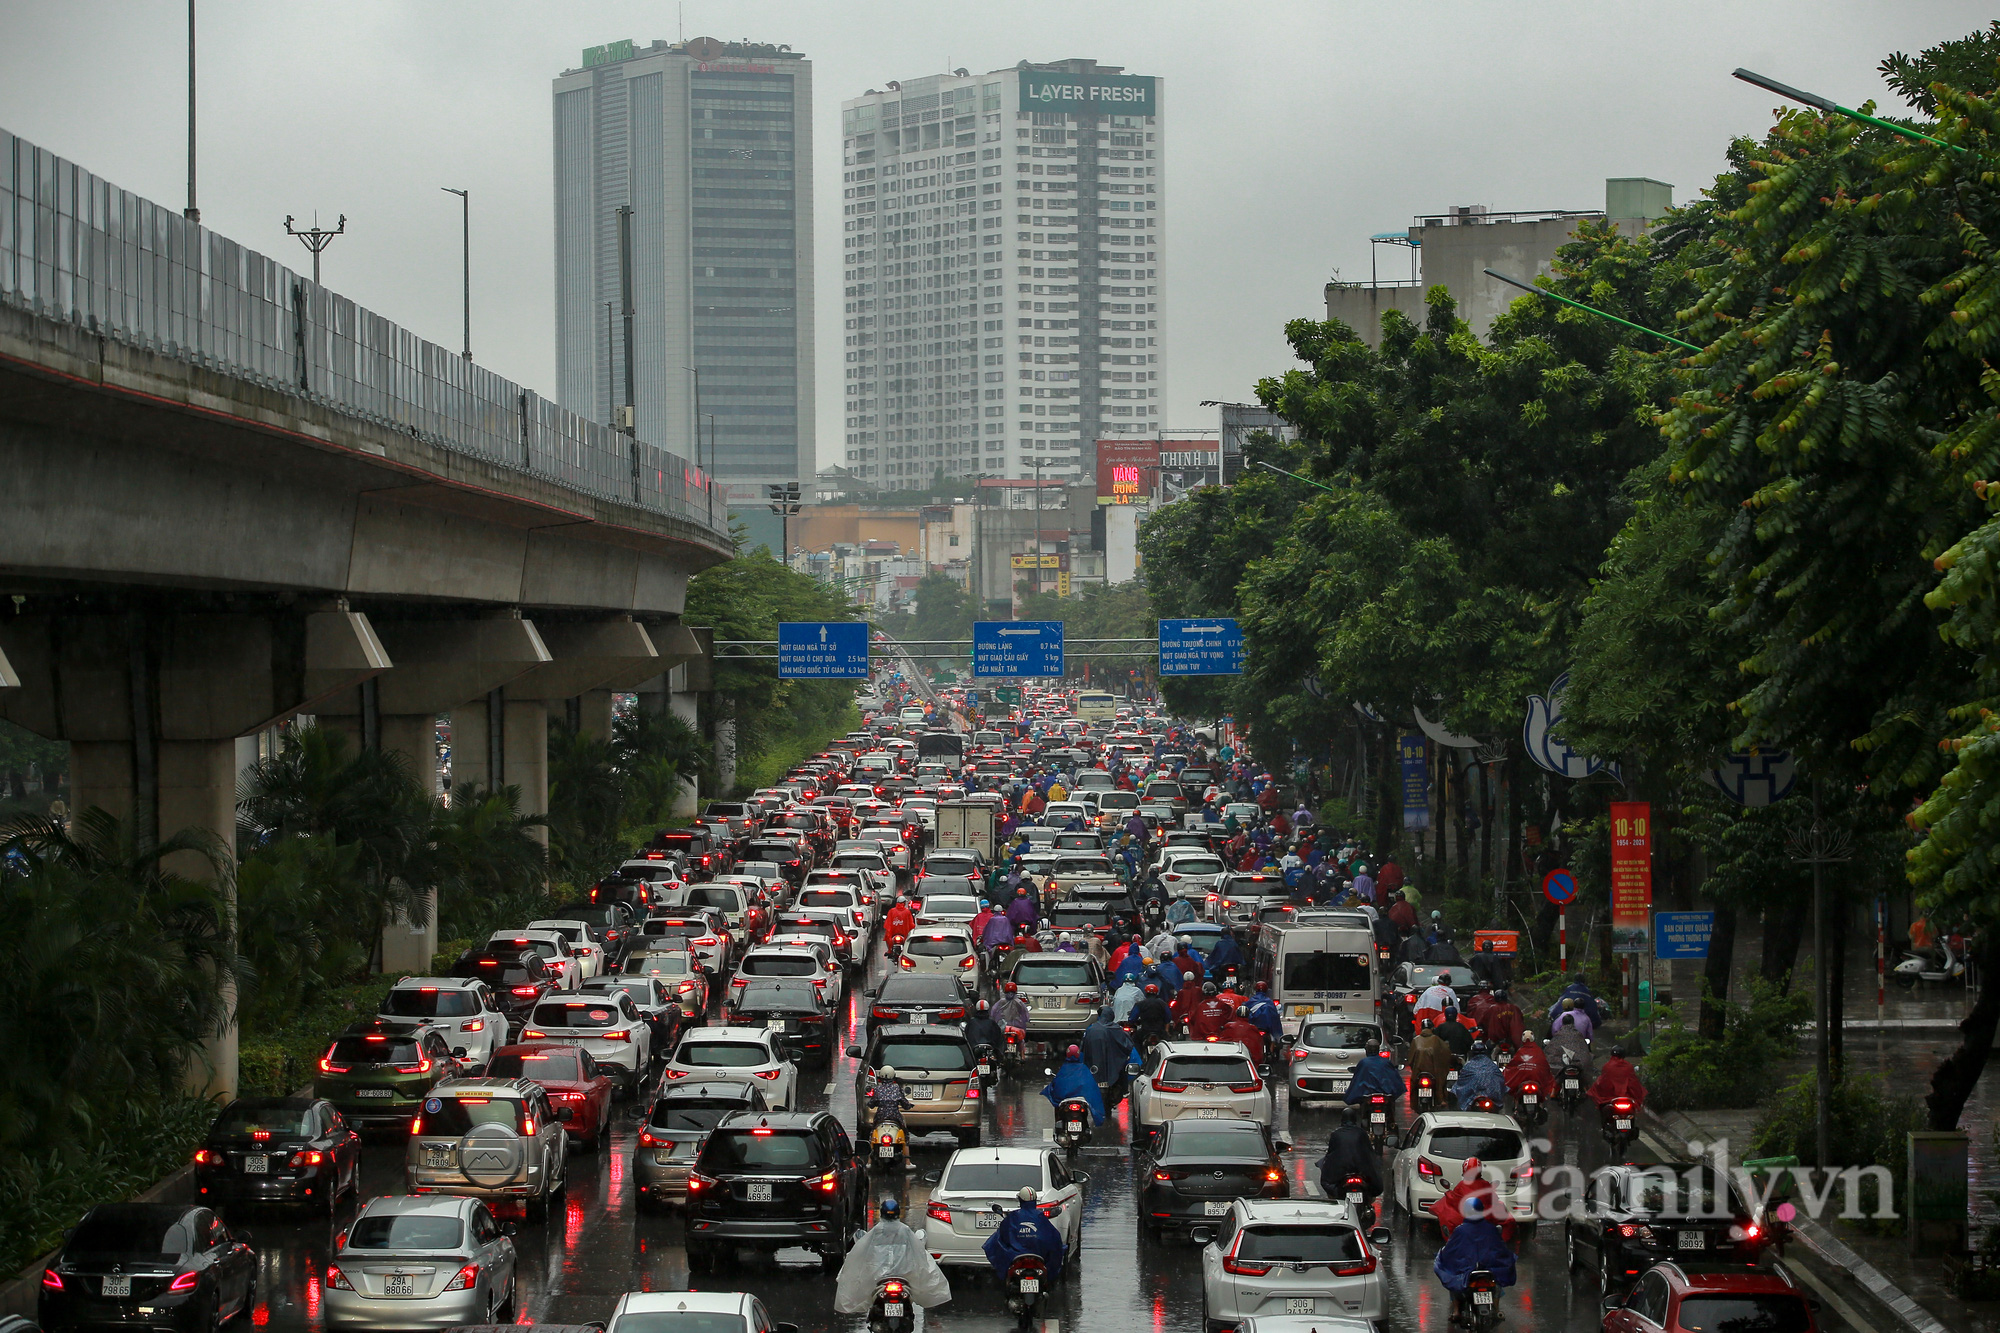 Đường phố ùn tắc, người Hà Nội vật lộn đi làm trong cơn mưa tầm tã - Ảnh 17.